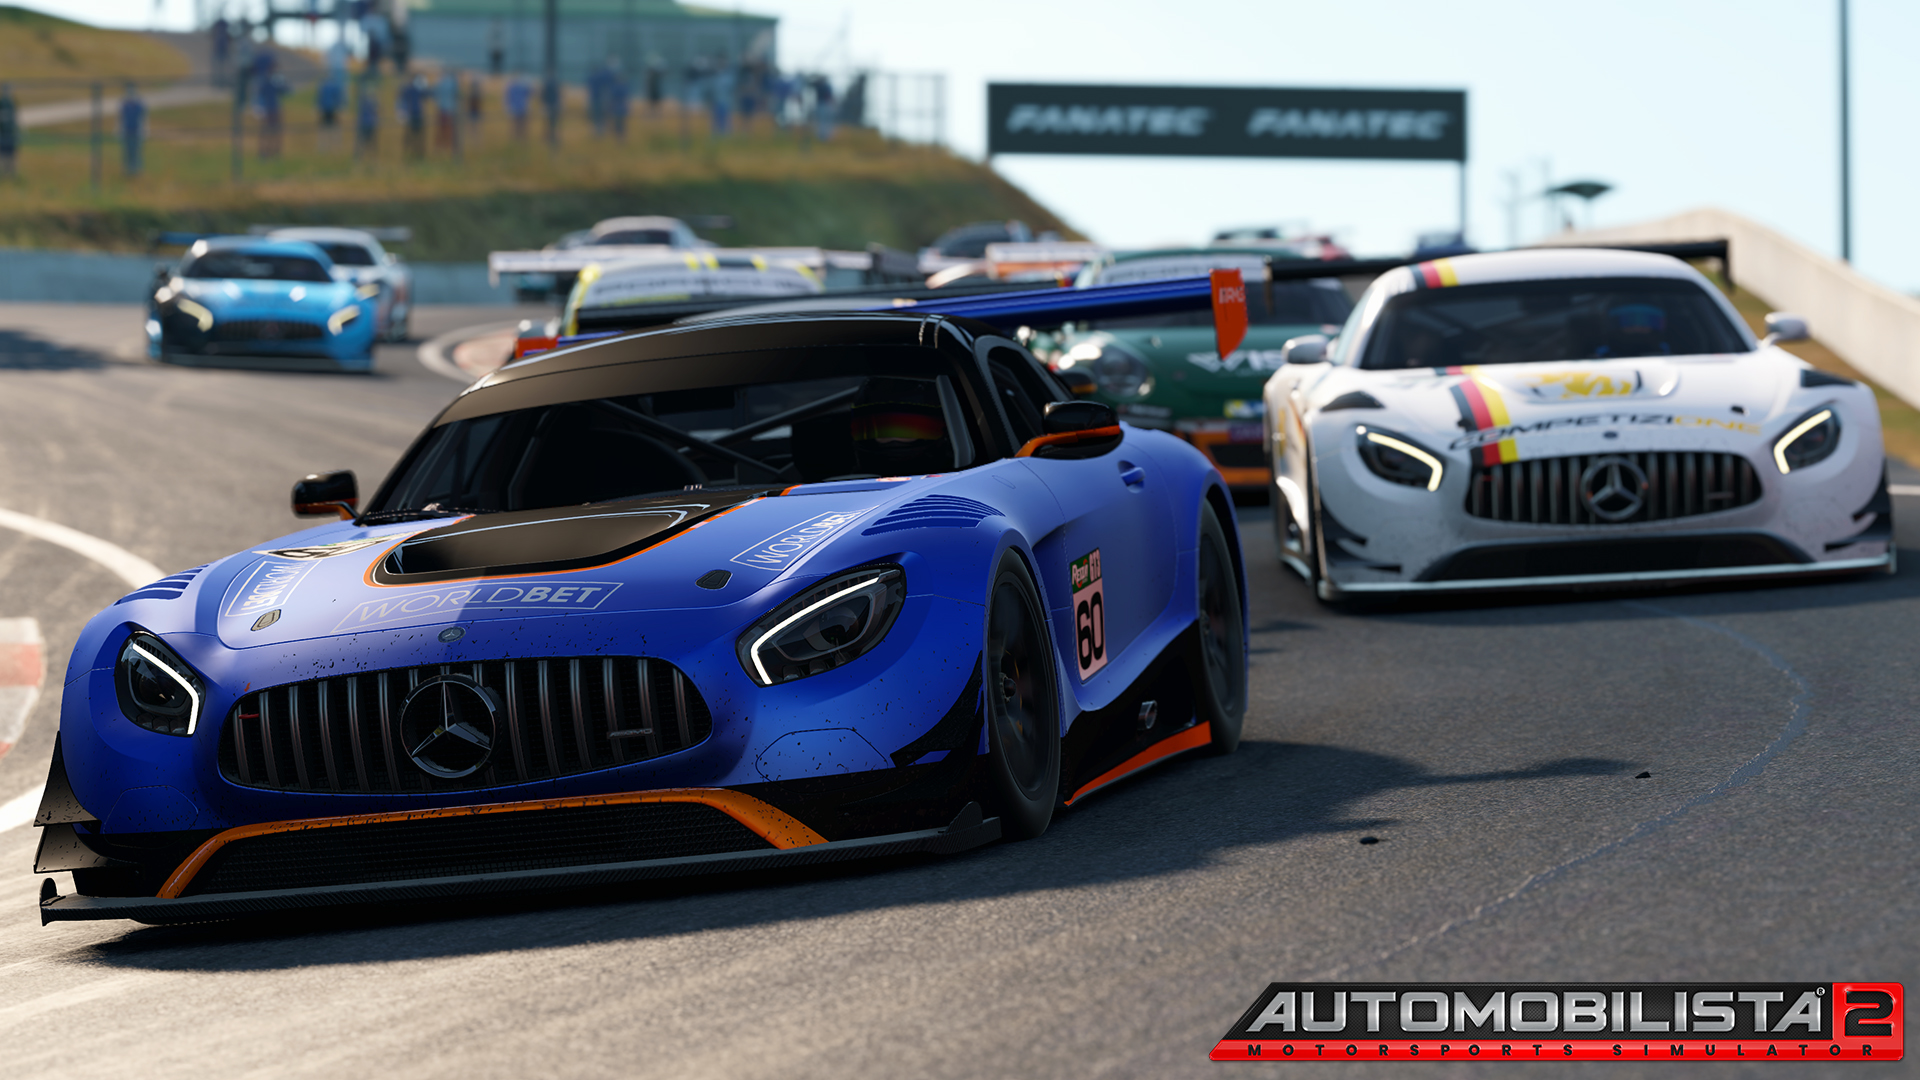 More information about "Automobilista 2: l'October Development Update annuncia un mare di novità!"